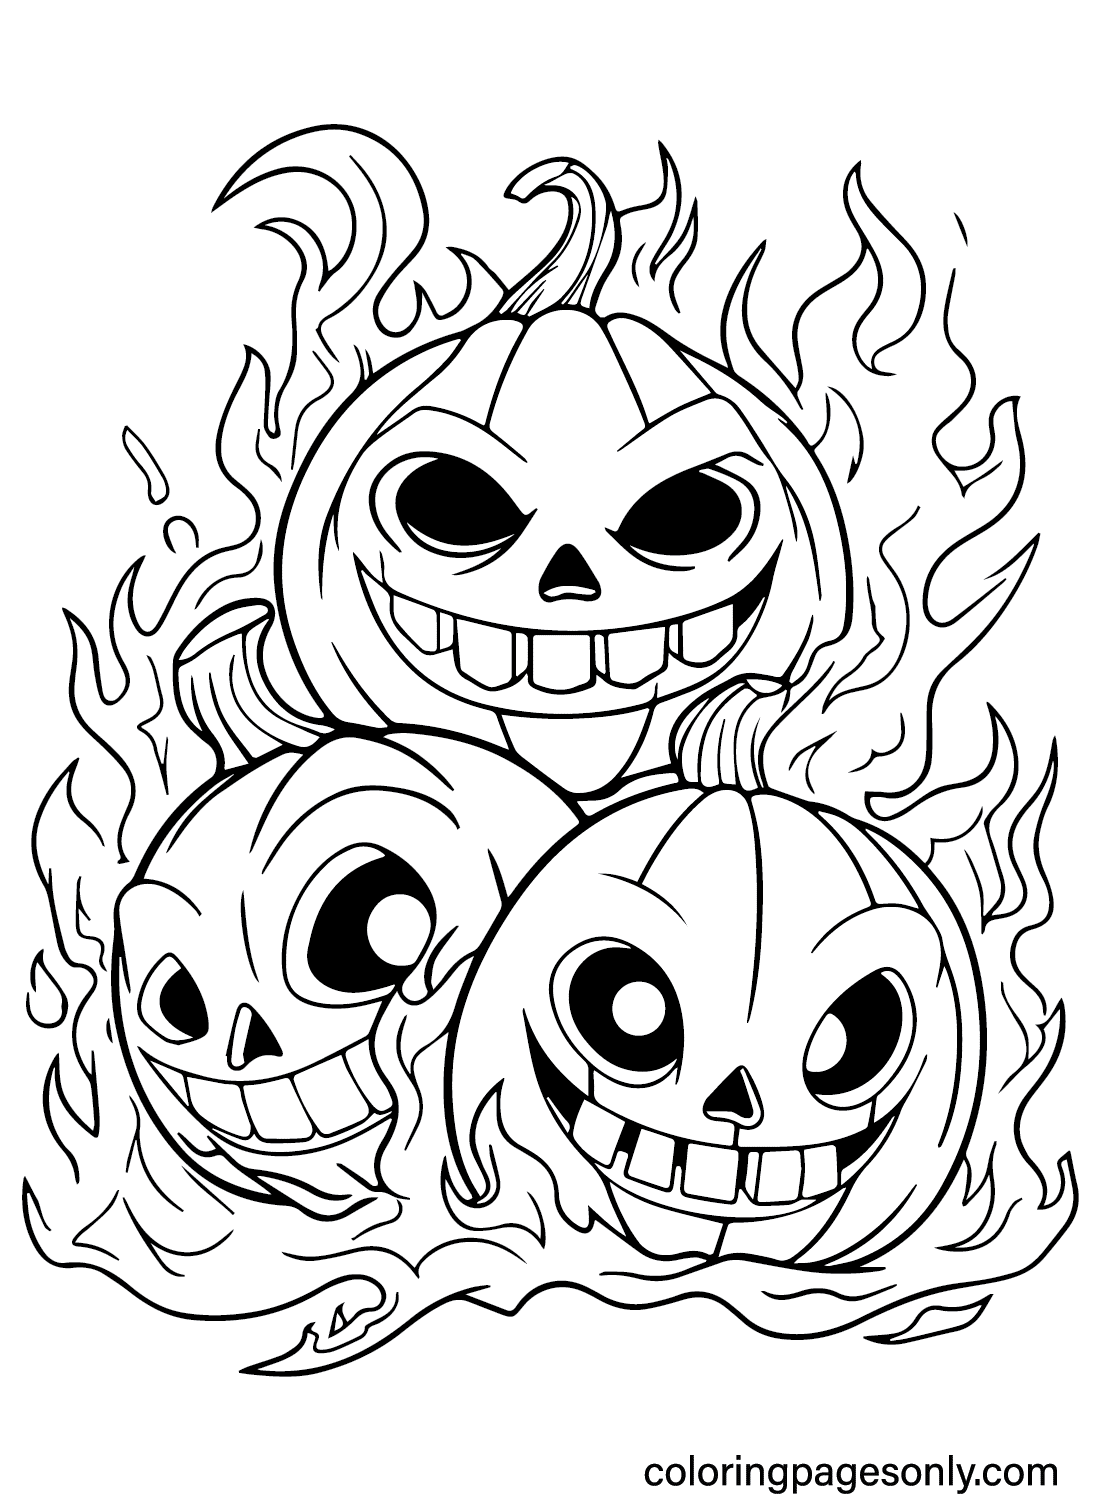 Página para colorear de calabaza de Halloween aterradora de Scary Halloween